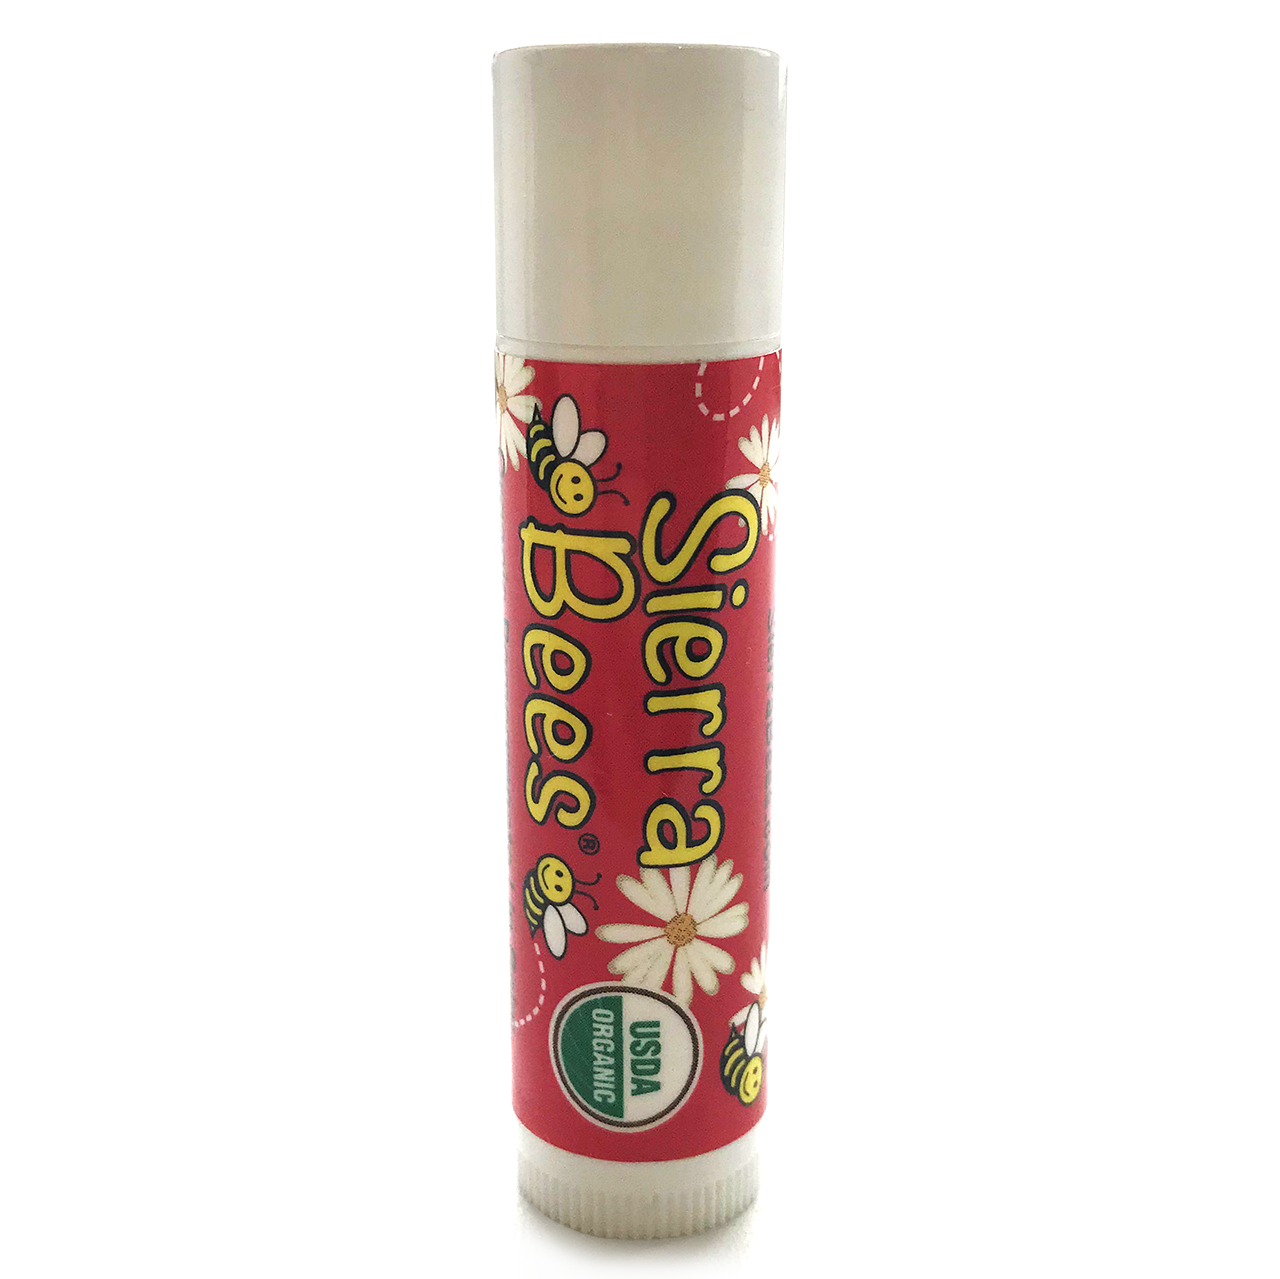 Органічний бальзам для губ Sierra Bees "Pomegranate Lip Balm" гранатовий (4,25 г)